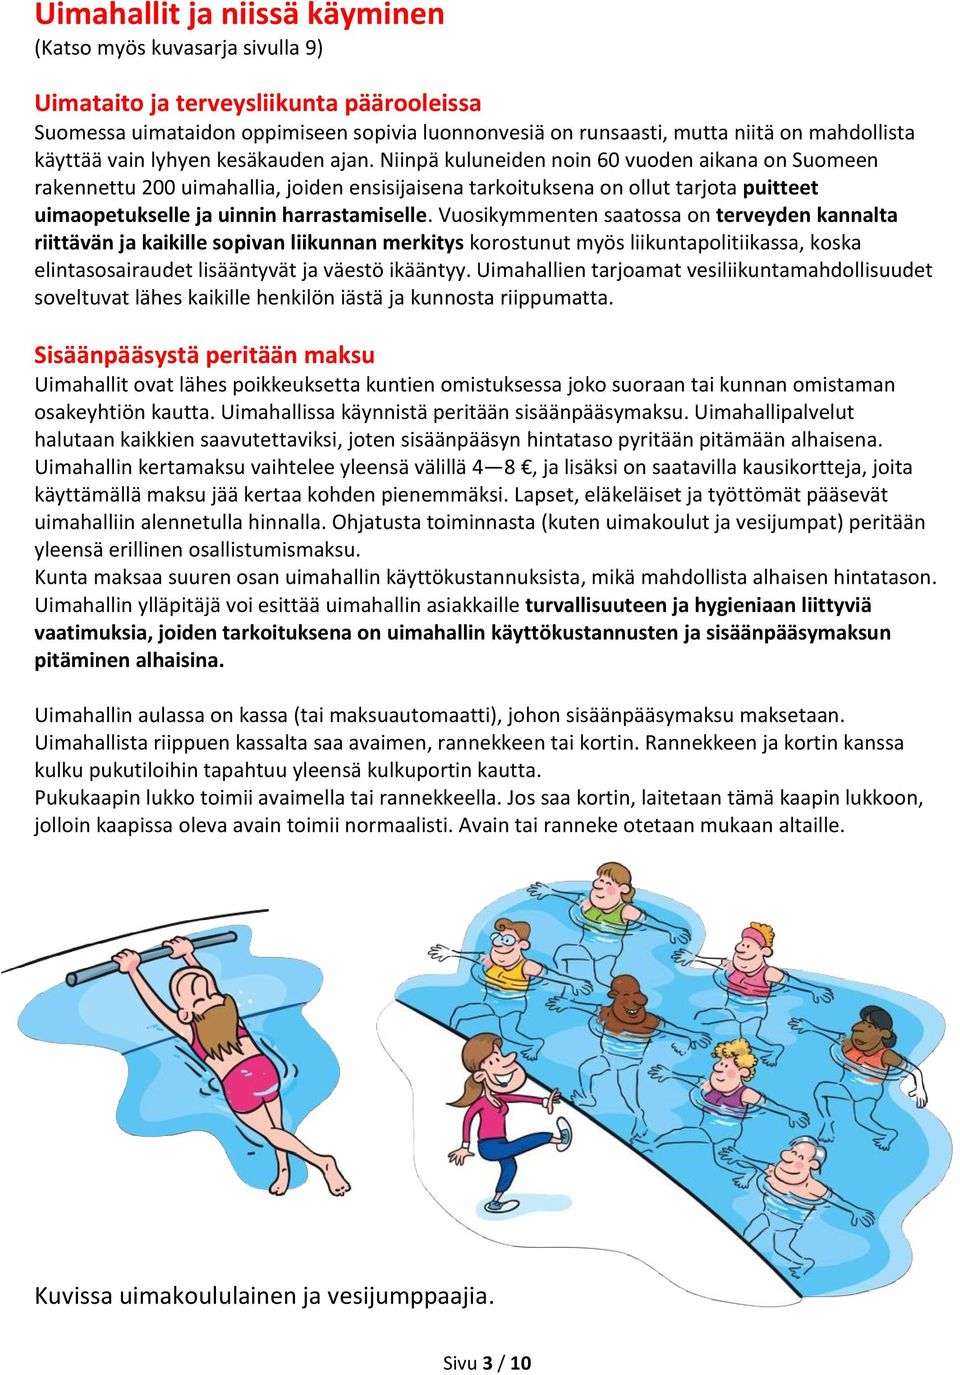 Niinpä kuluneiden noin 60 vuoden aikana on Suomeen rakennettu 200 uimahallia, joiden ensisijaisena tarkoituksena on ollut tarjota puitteet uimaopetukselle ja uinnin harrastamiselle.